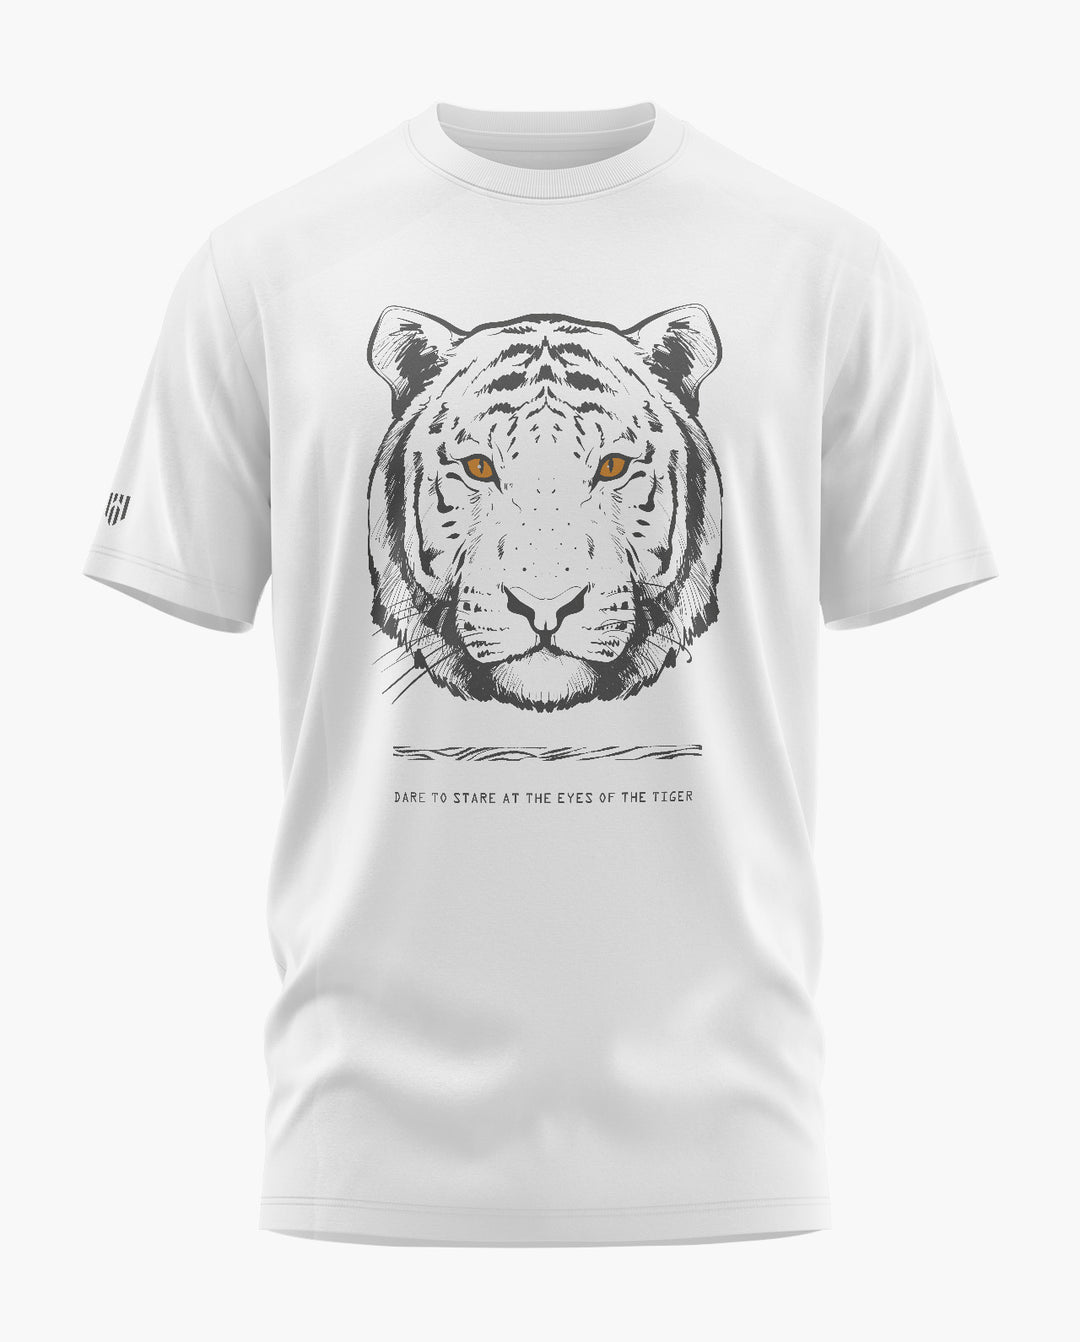 THE FIERCE TIGER T-Shirt